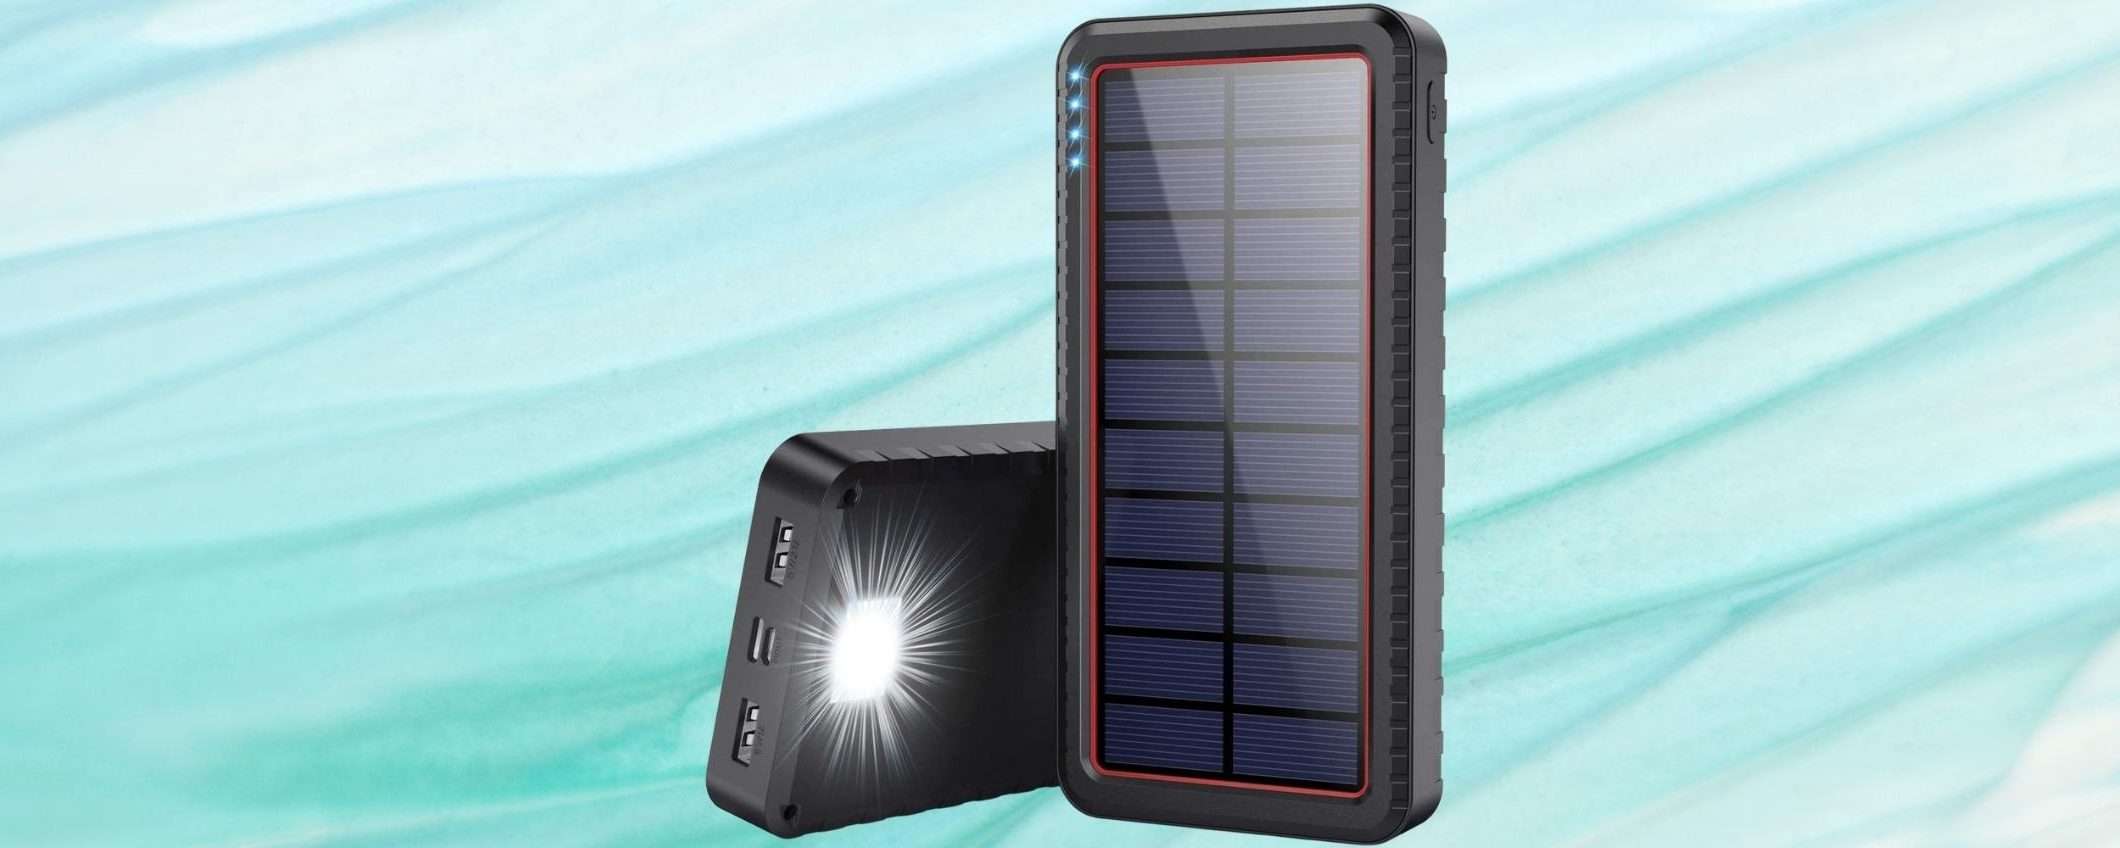 Powerbank solare: carichi qualunque cosa e la bolletta CROLLA